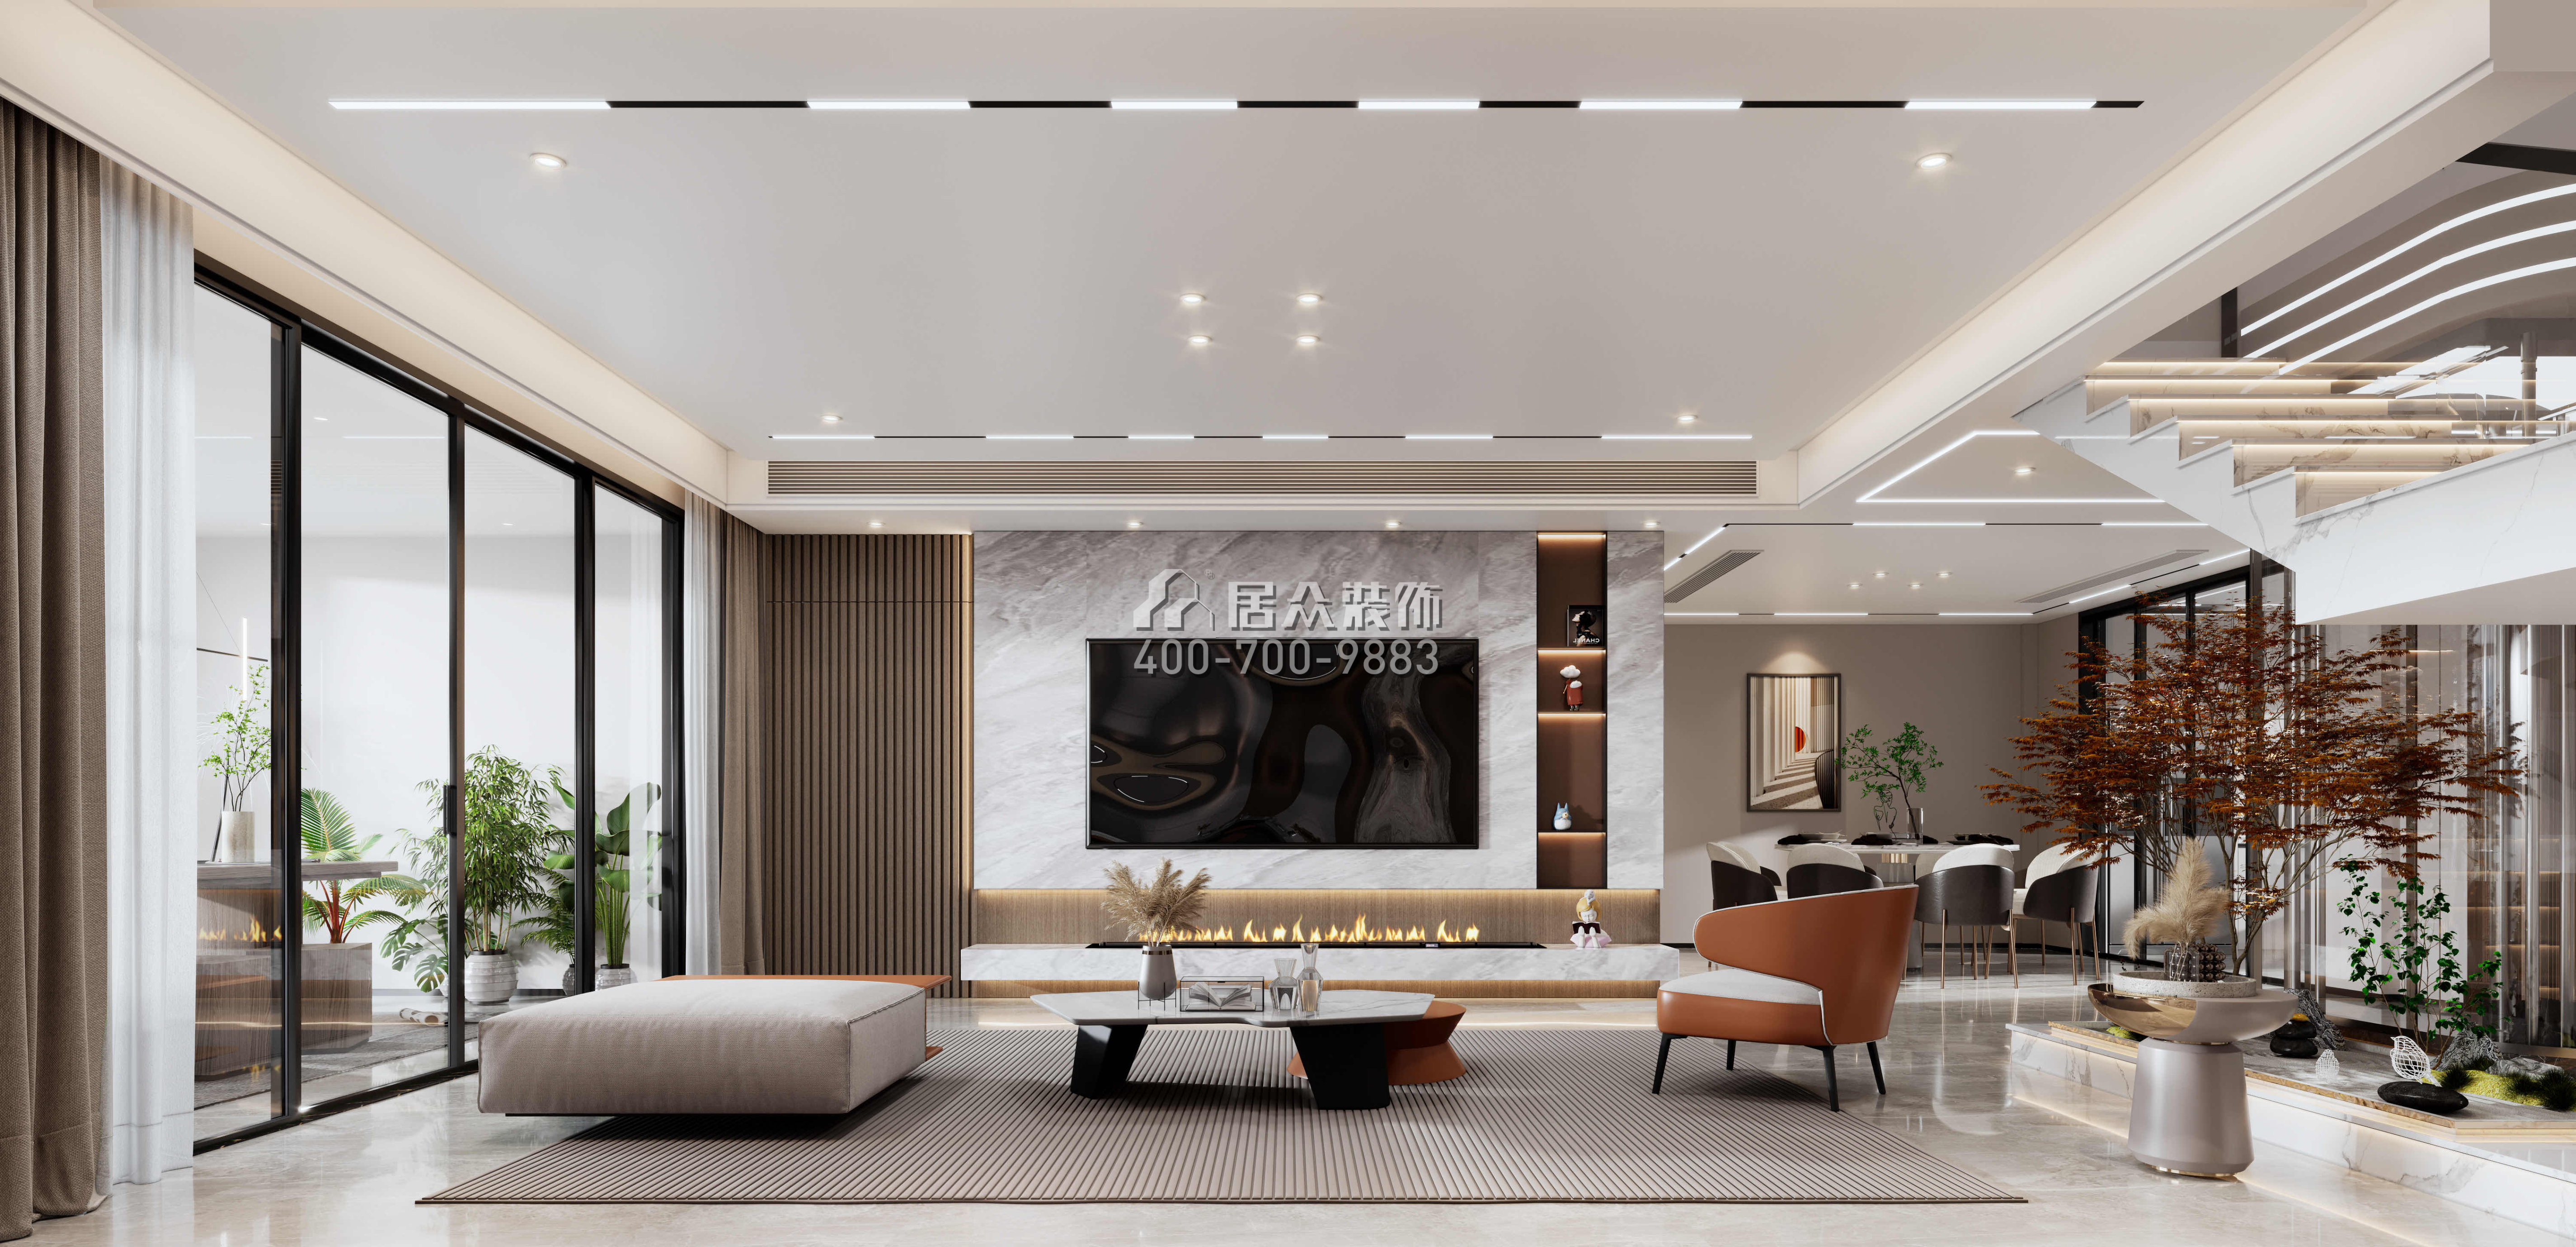 金天地悦湾450平方米现代简约风格叠墅户型客厅装修效果图